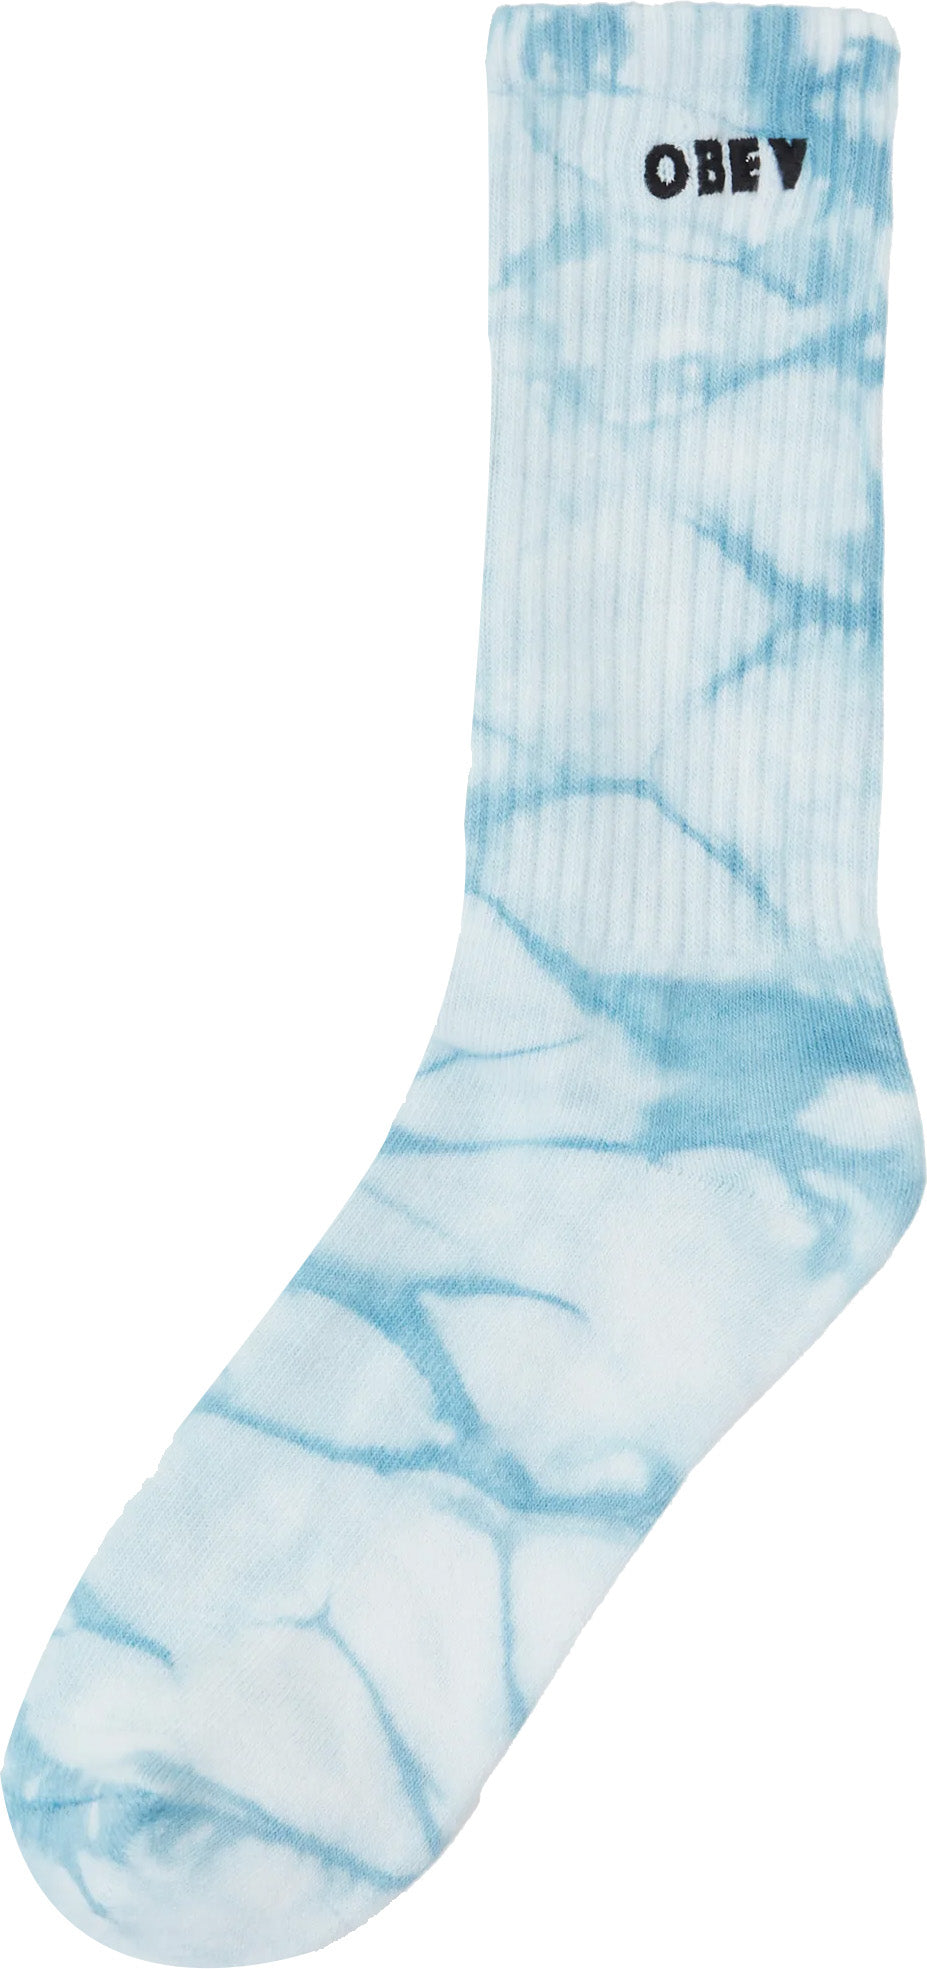  Obey Calze Tie Dye Socks Turquoise Multi Blue Uomo - 1